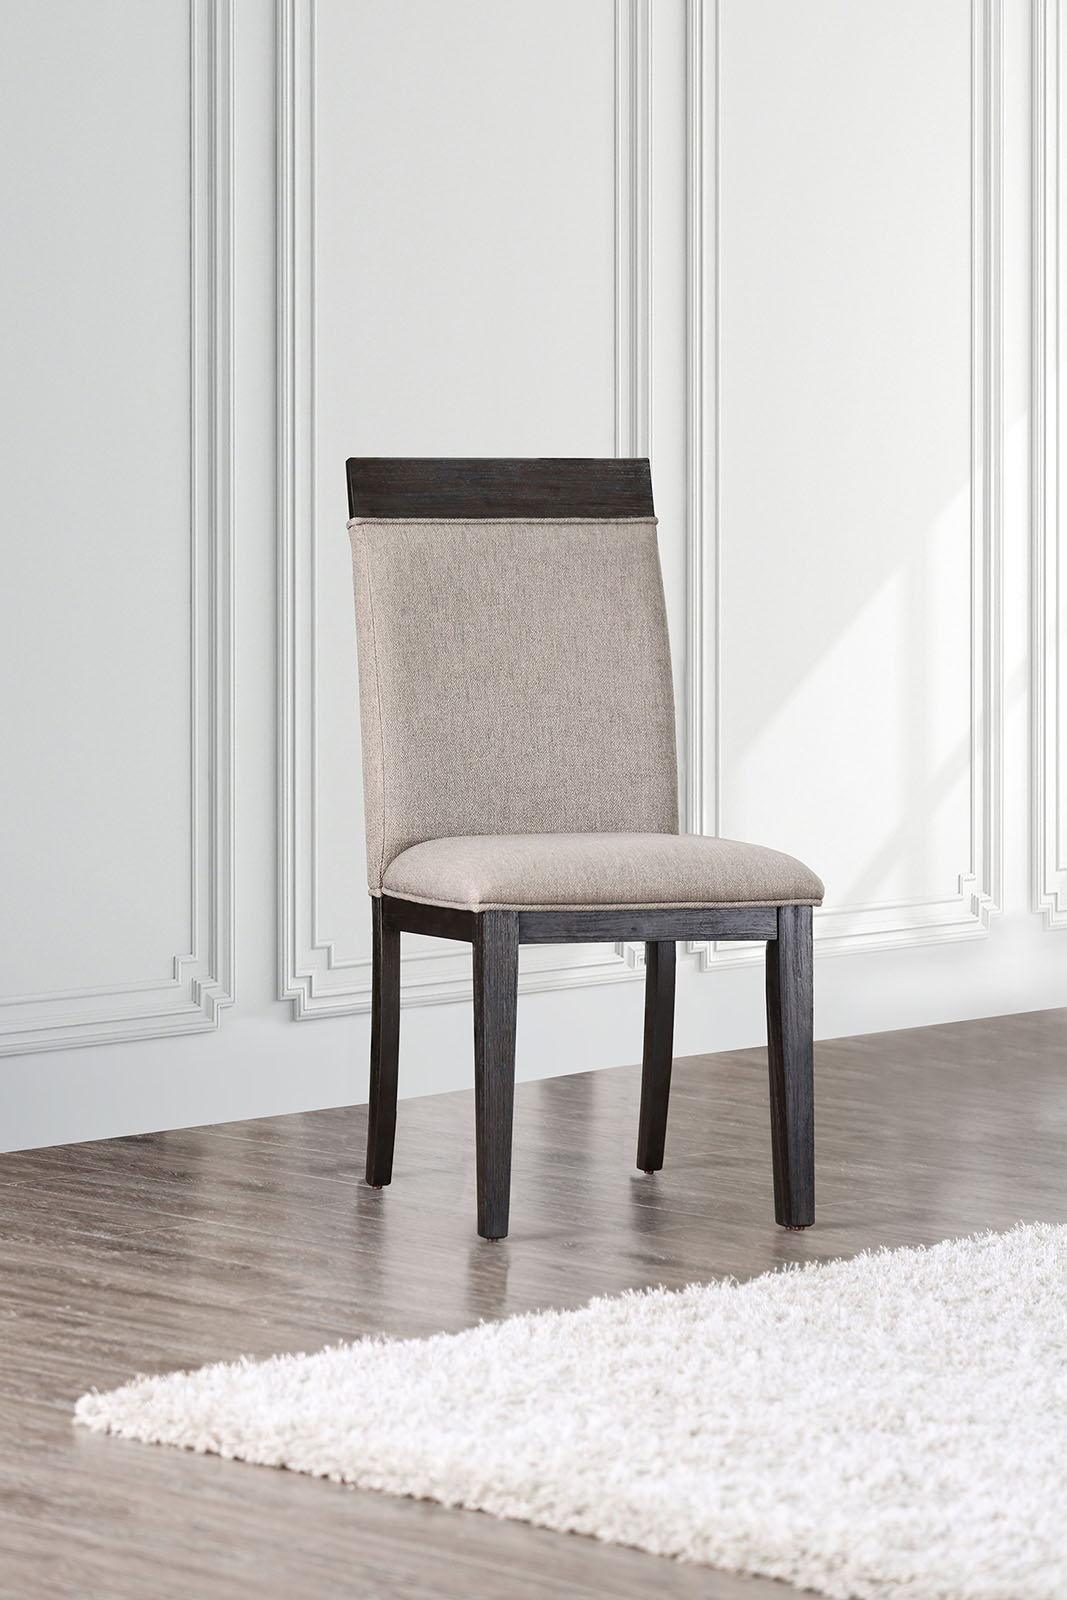 Furniture of America - Modoc - Side Chair (Set of 2) - Espresso / Beige - 5th Avenue Furniture